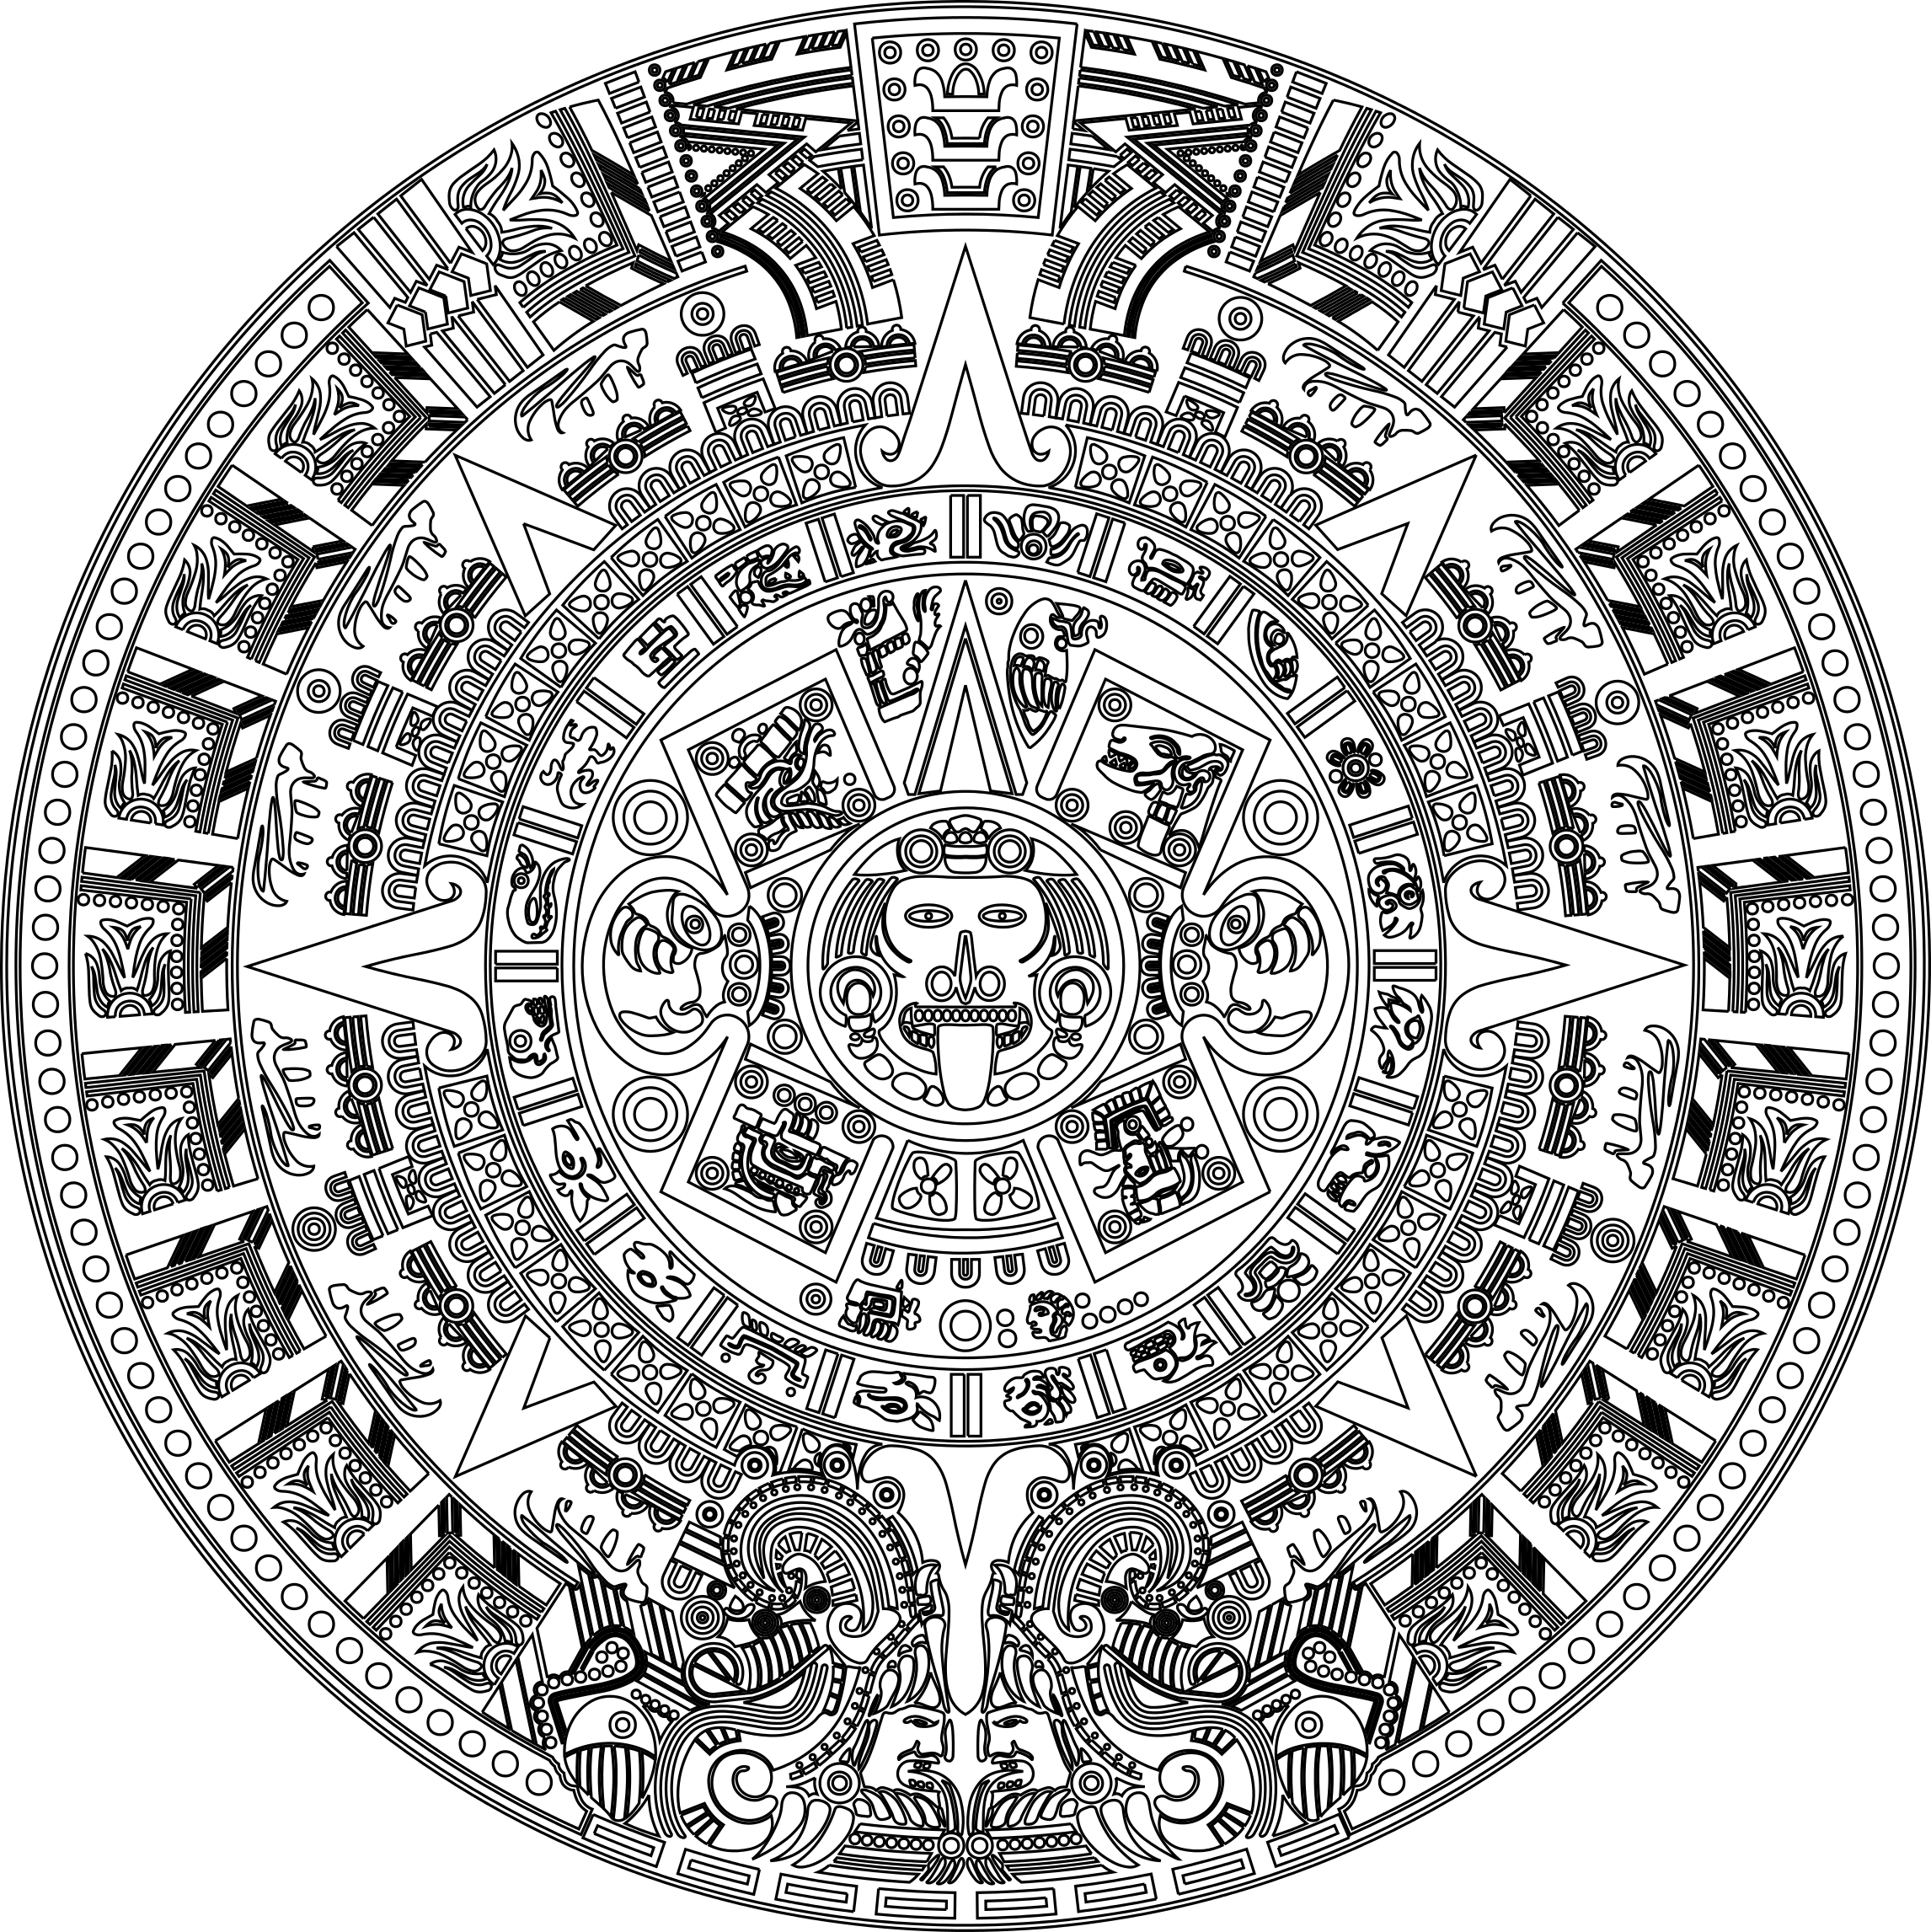 Календарь майя главная мысль. Календарь ацтеков вектор. Календарь ацтеков камень. Орнамент Майя и ацтеков на Камне. Камень солнца ацтеков вектор.